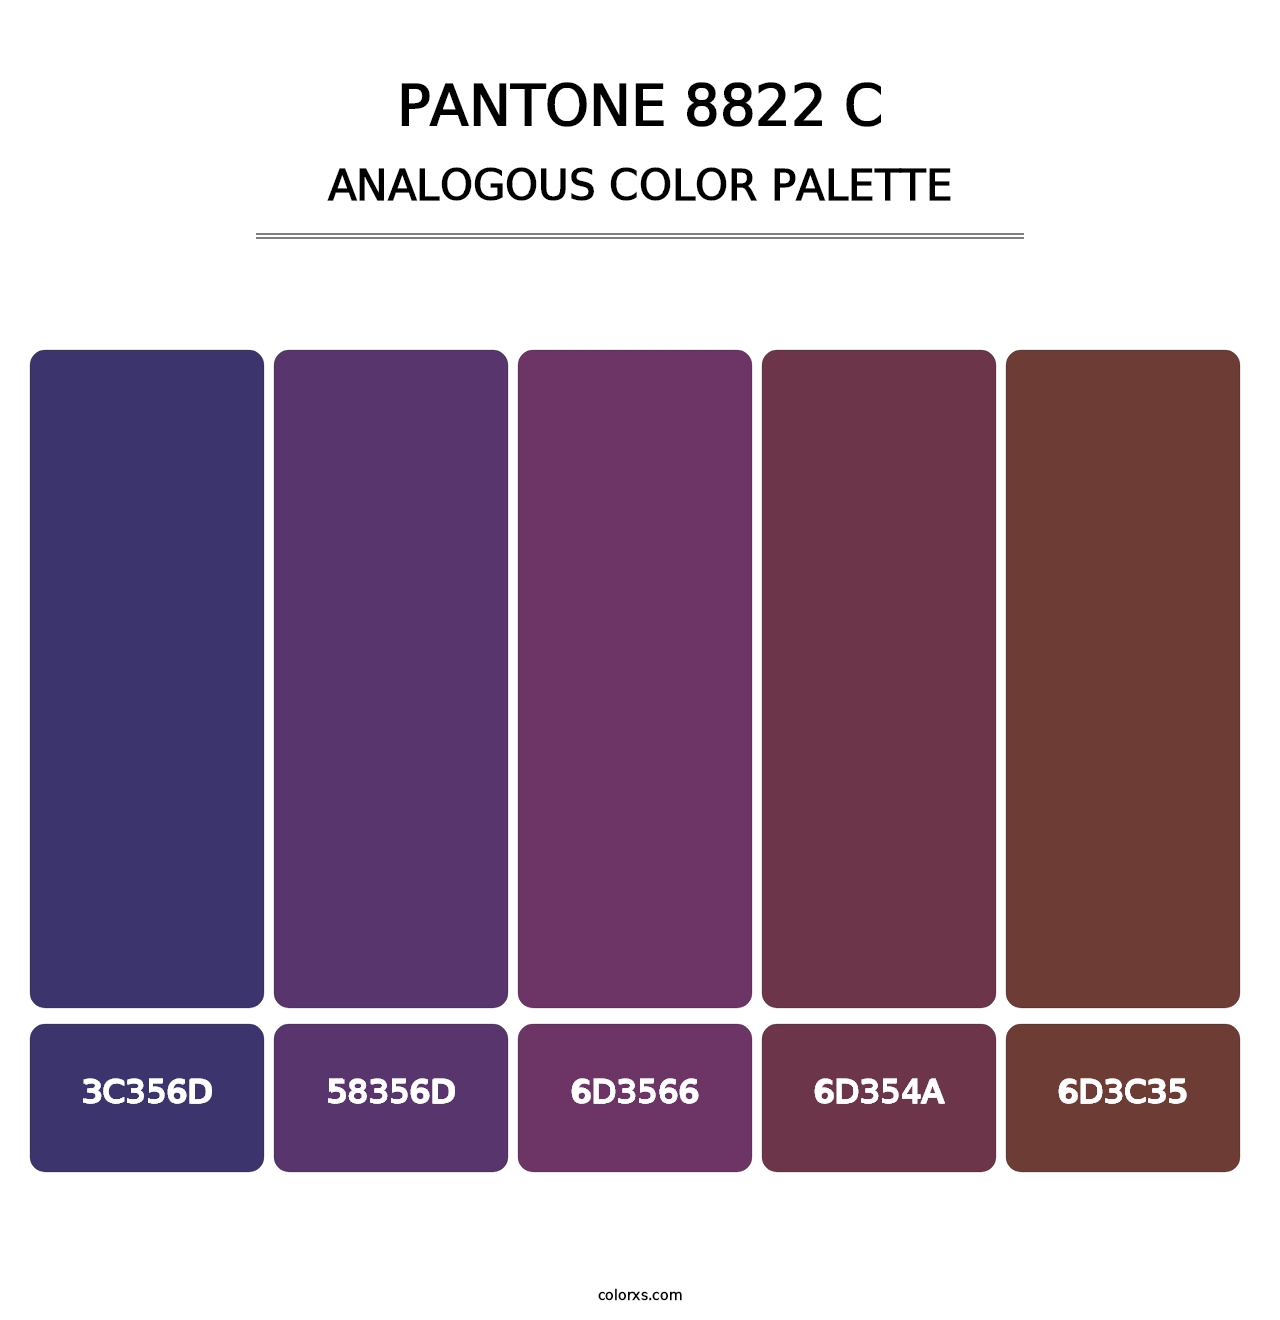 PANTONE 8822 C - Analogous Color Palette